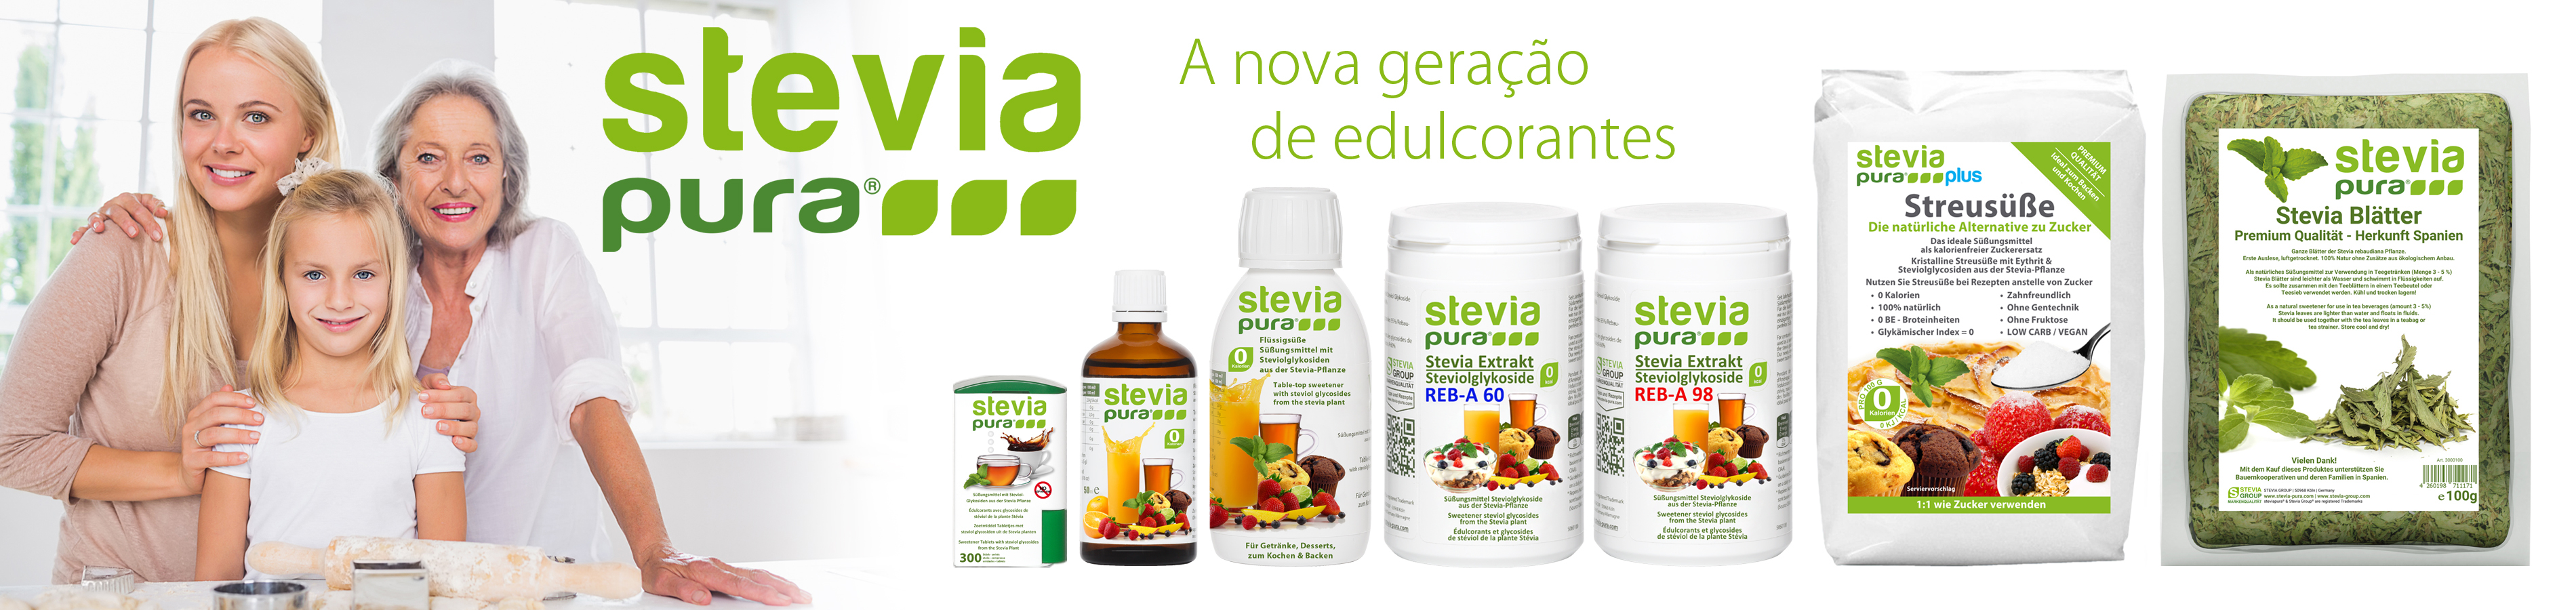 Stevia Group - A nova geração de edulcorantes: steviapura